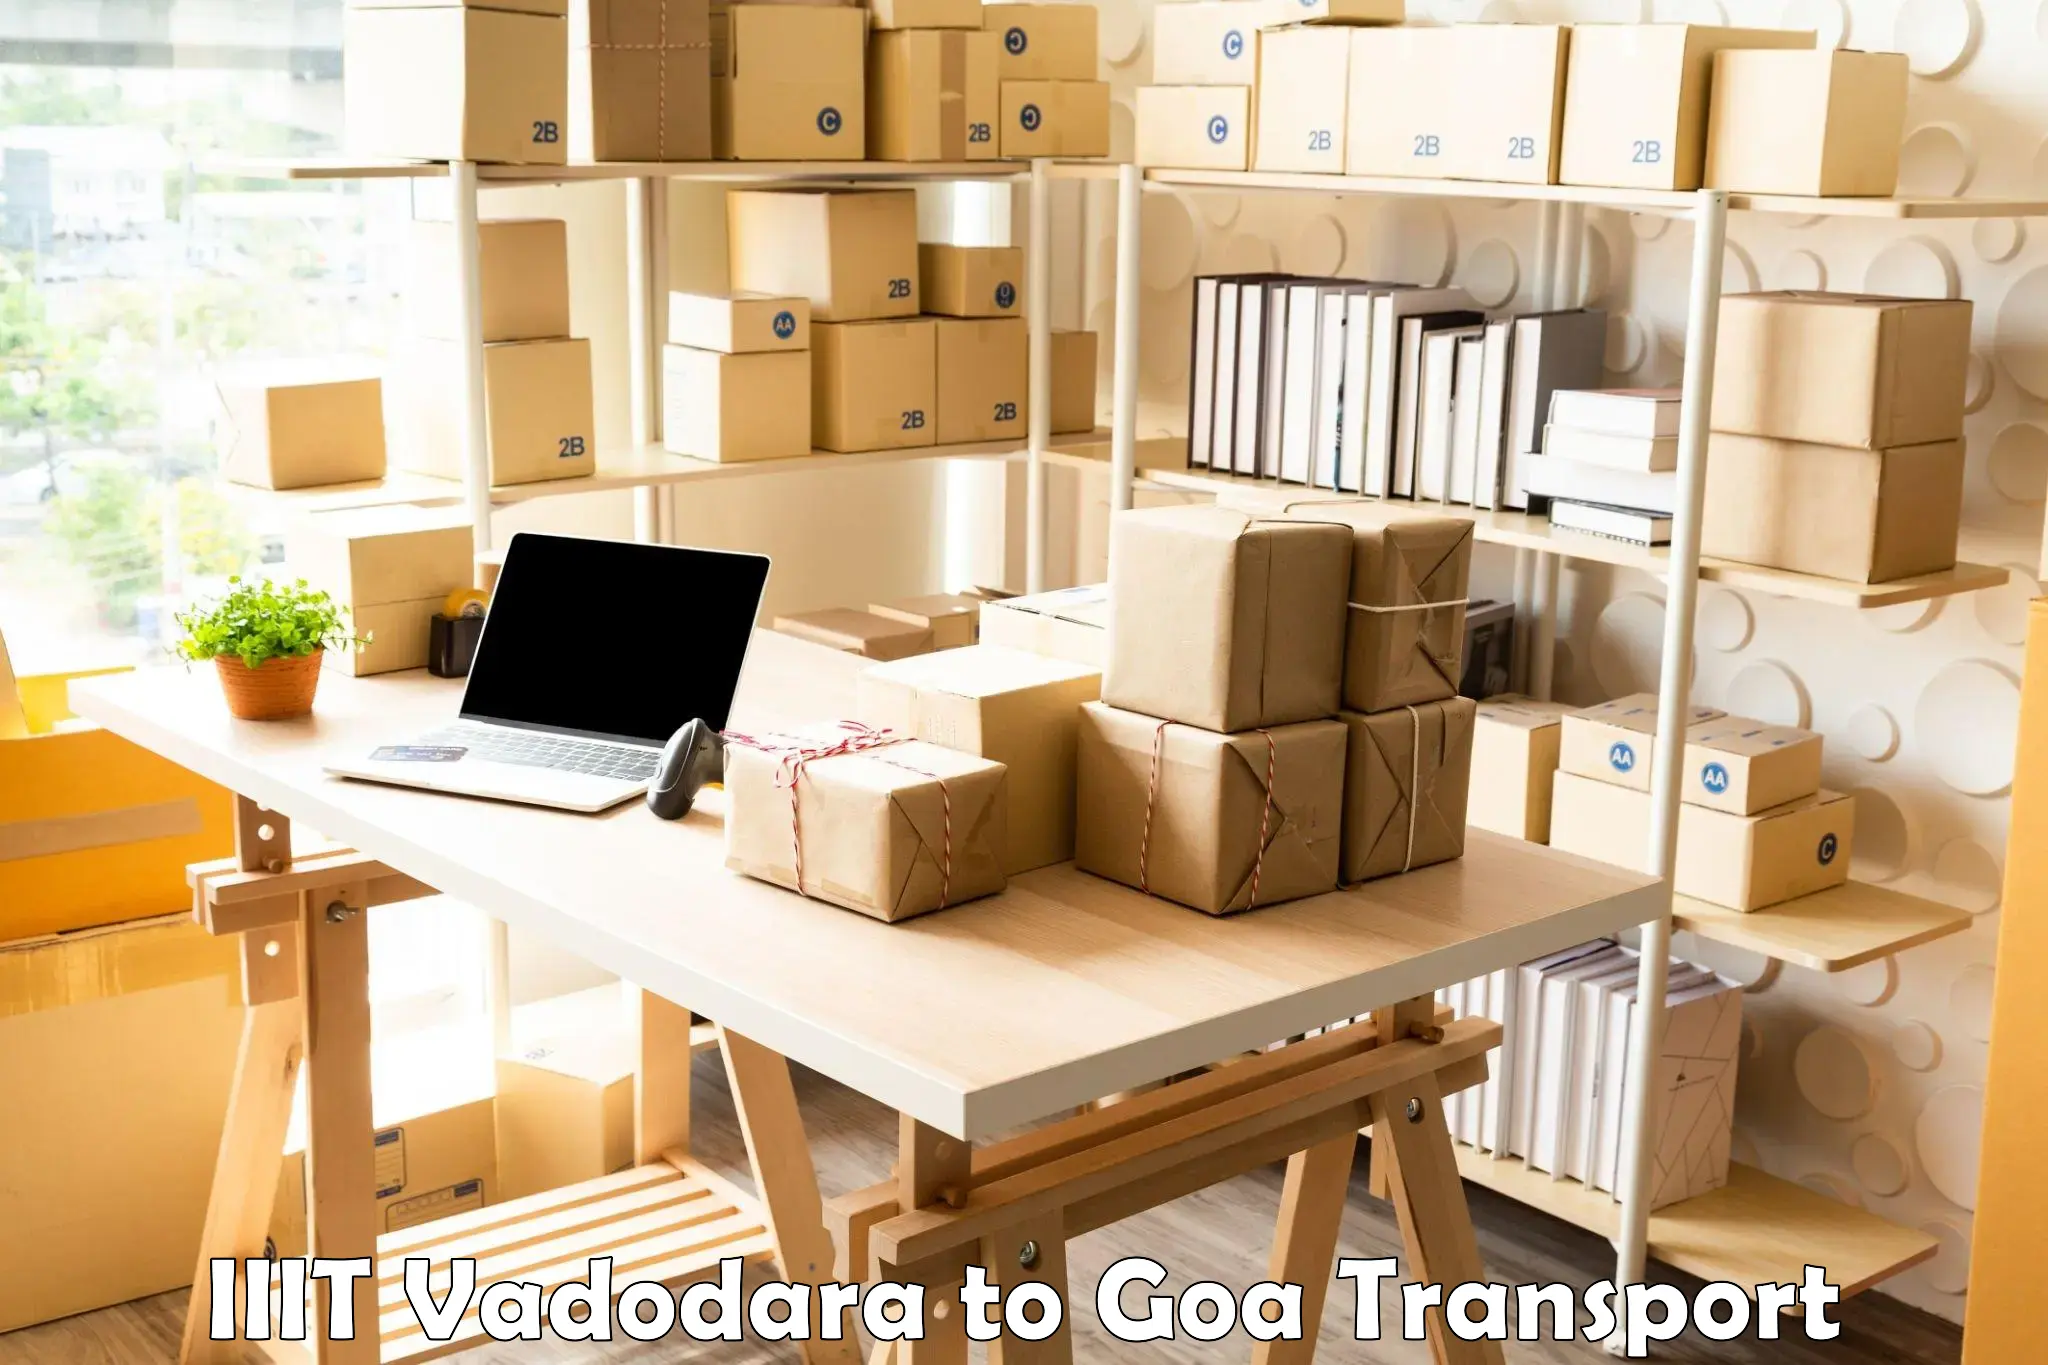 Road transport online services IIIT Vadodara to Goa